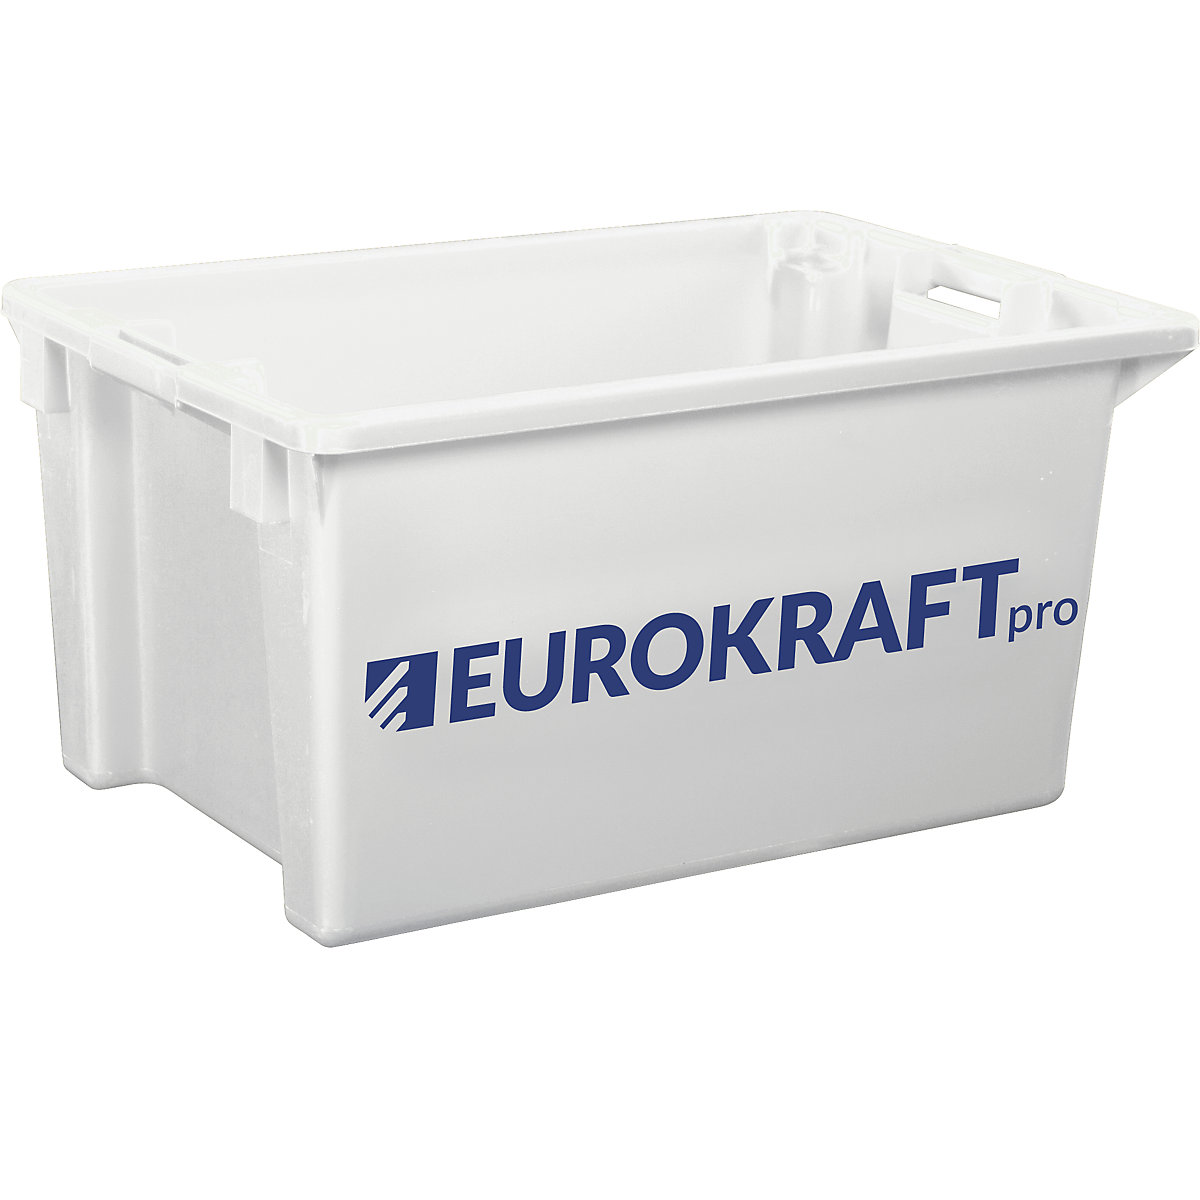 EUROKRAFTpro – Obrotowy pojemnik do ustawiania w stos z polipropylenu dopuszczonego do kontaktu z żywnością, poj. 70 l, opak. 2 szt., ścianki i dno zamknięte, kolor naturalny